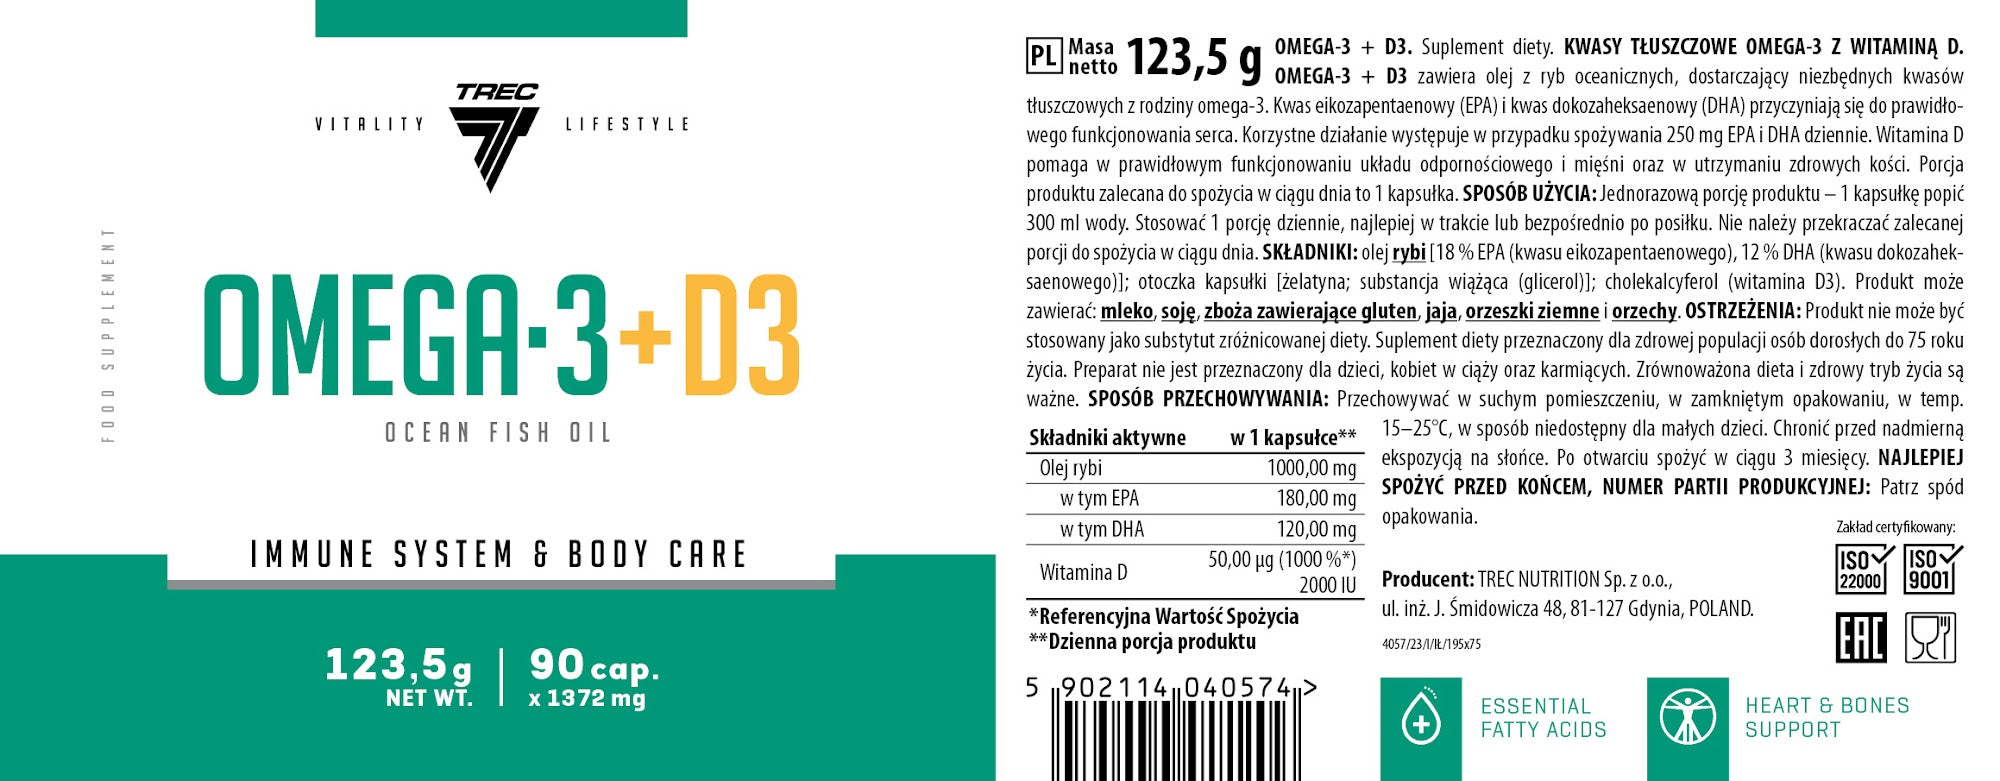 Trec Nutrition OMEGA-3 + D3 90caps